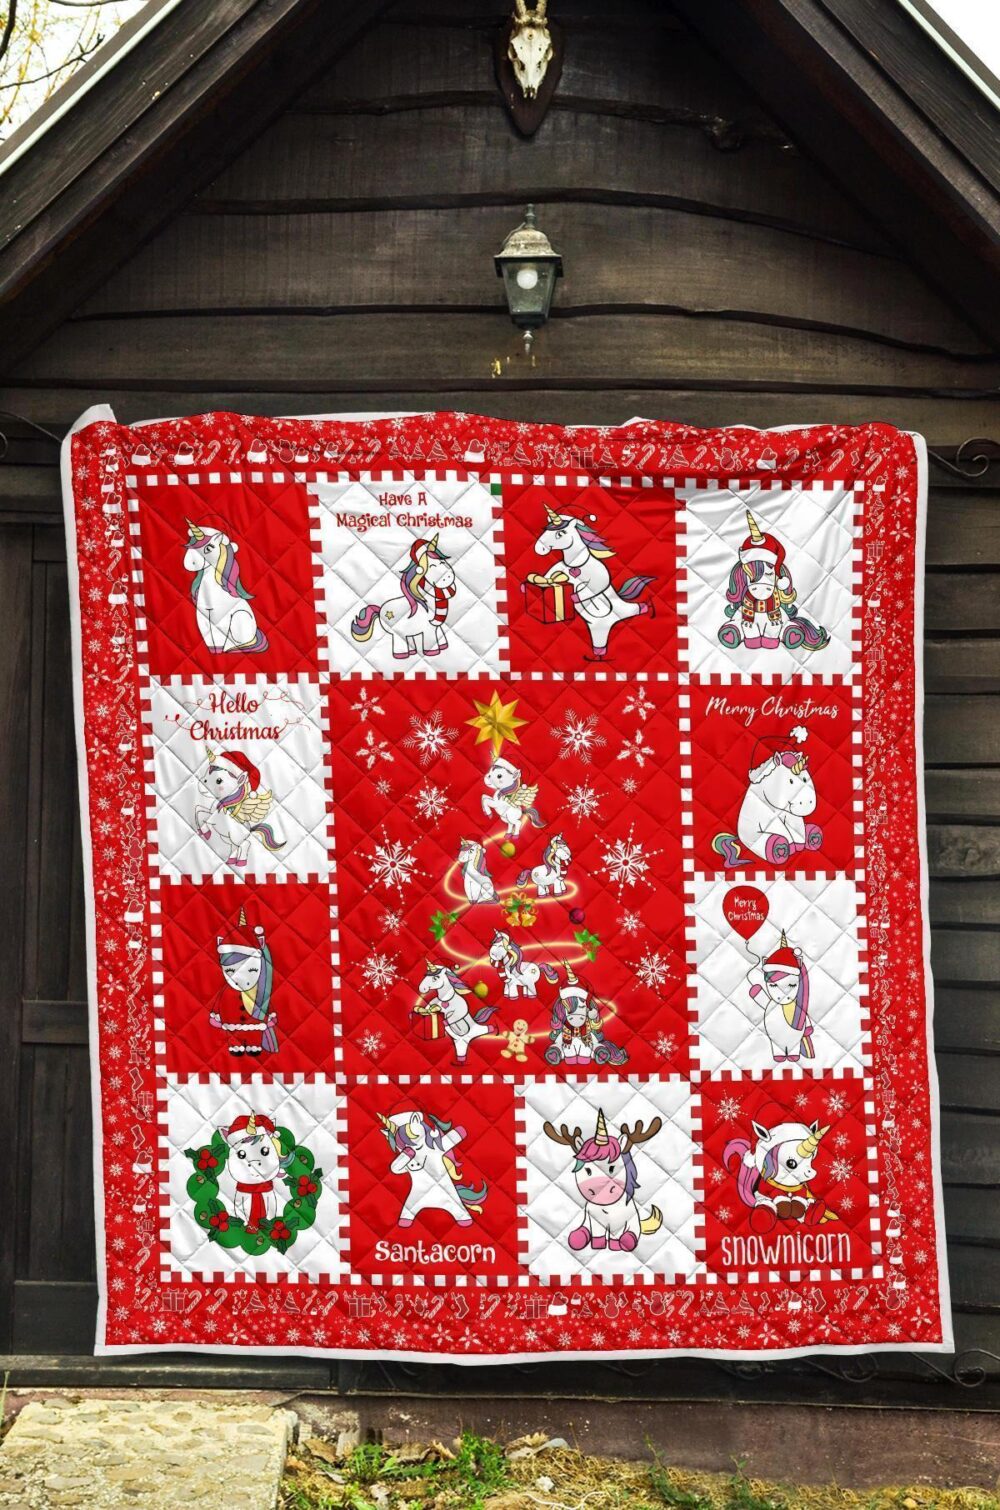 Christmas Unicorn Quilt Blanket Xmas Gift For Unicorn Lover